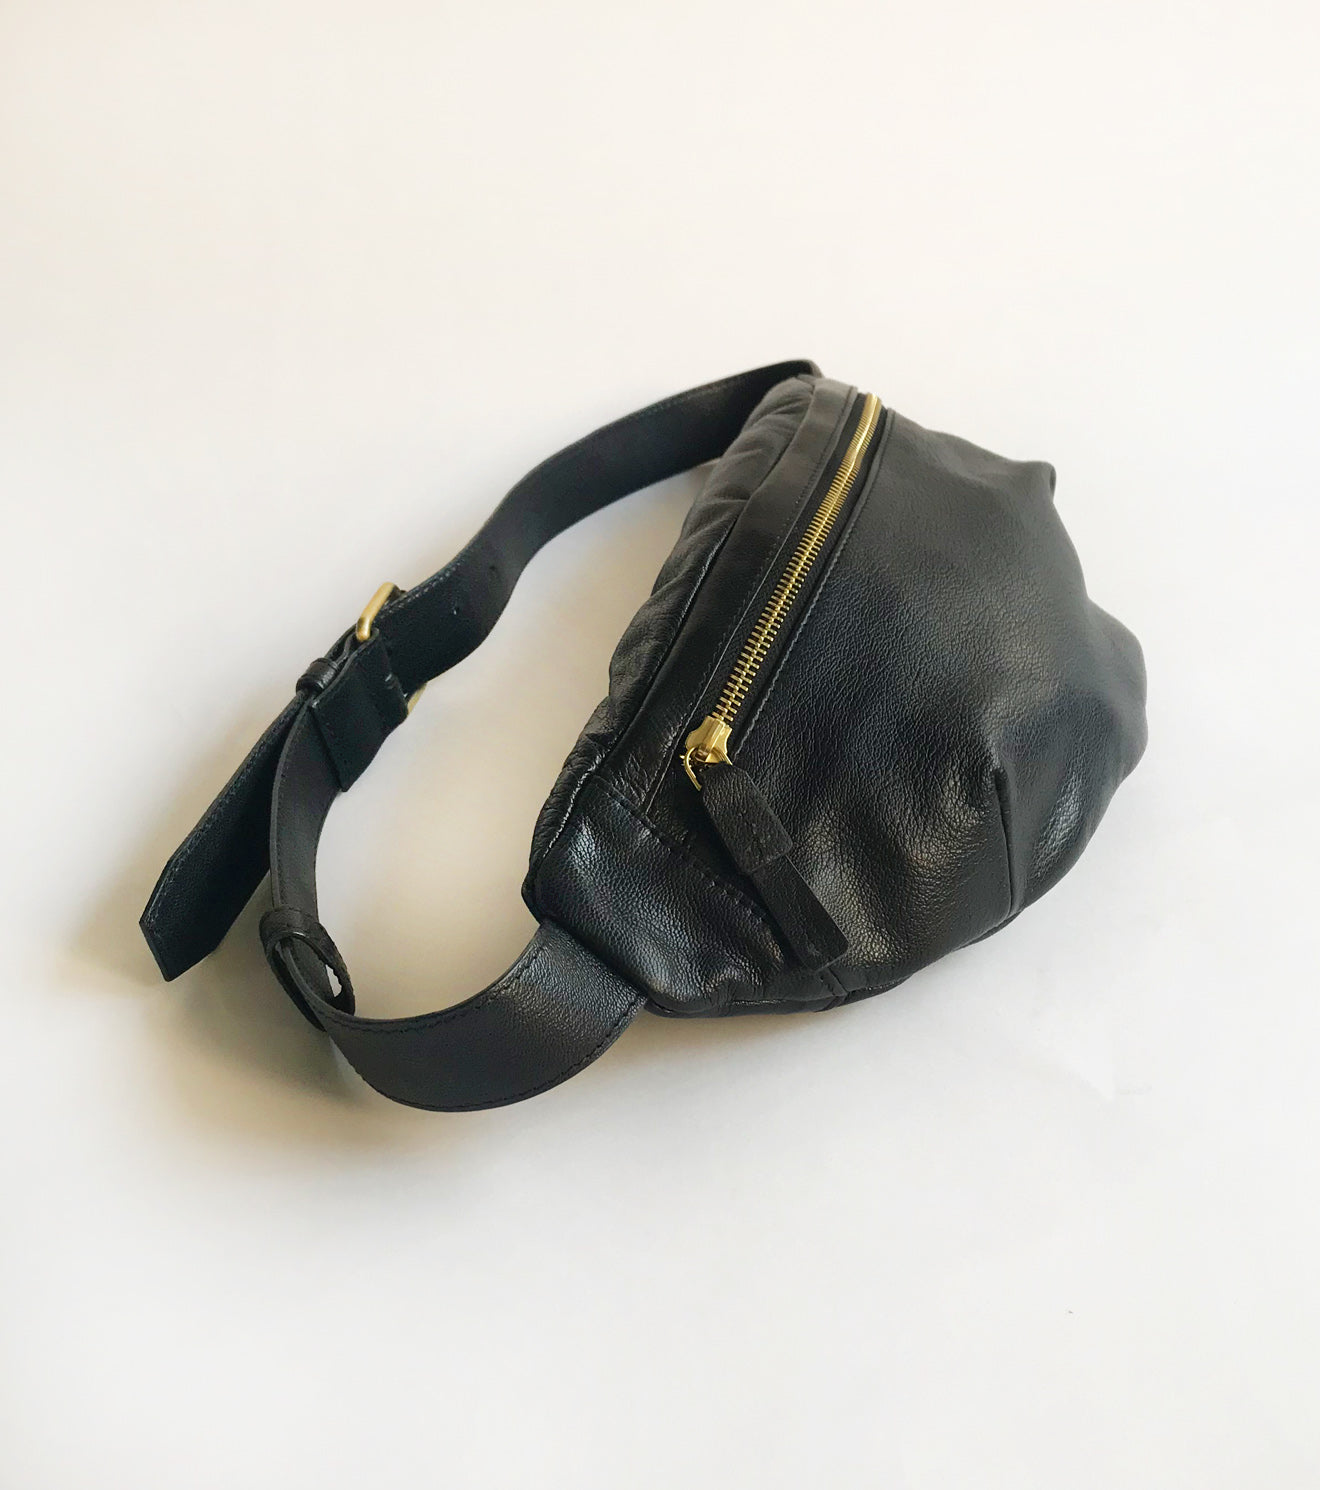 Genuine Leather Waist Bag For Men Fanny Pack Bum Bag Fashion Leather Strap  Shoulder Bag Satchel Crossbody Bag Sling Bag For Men